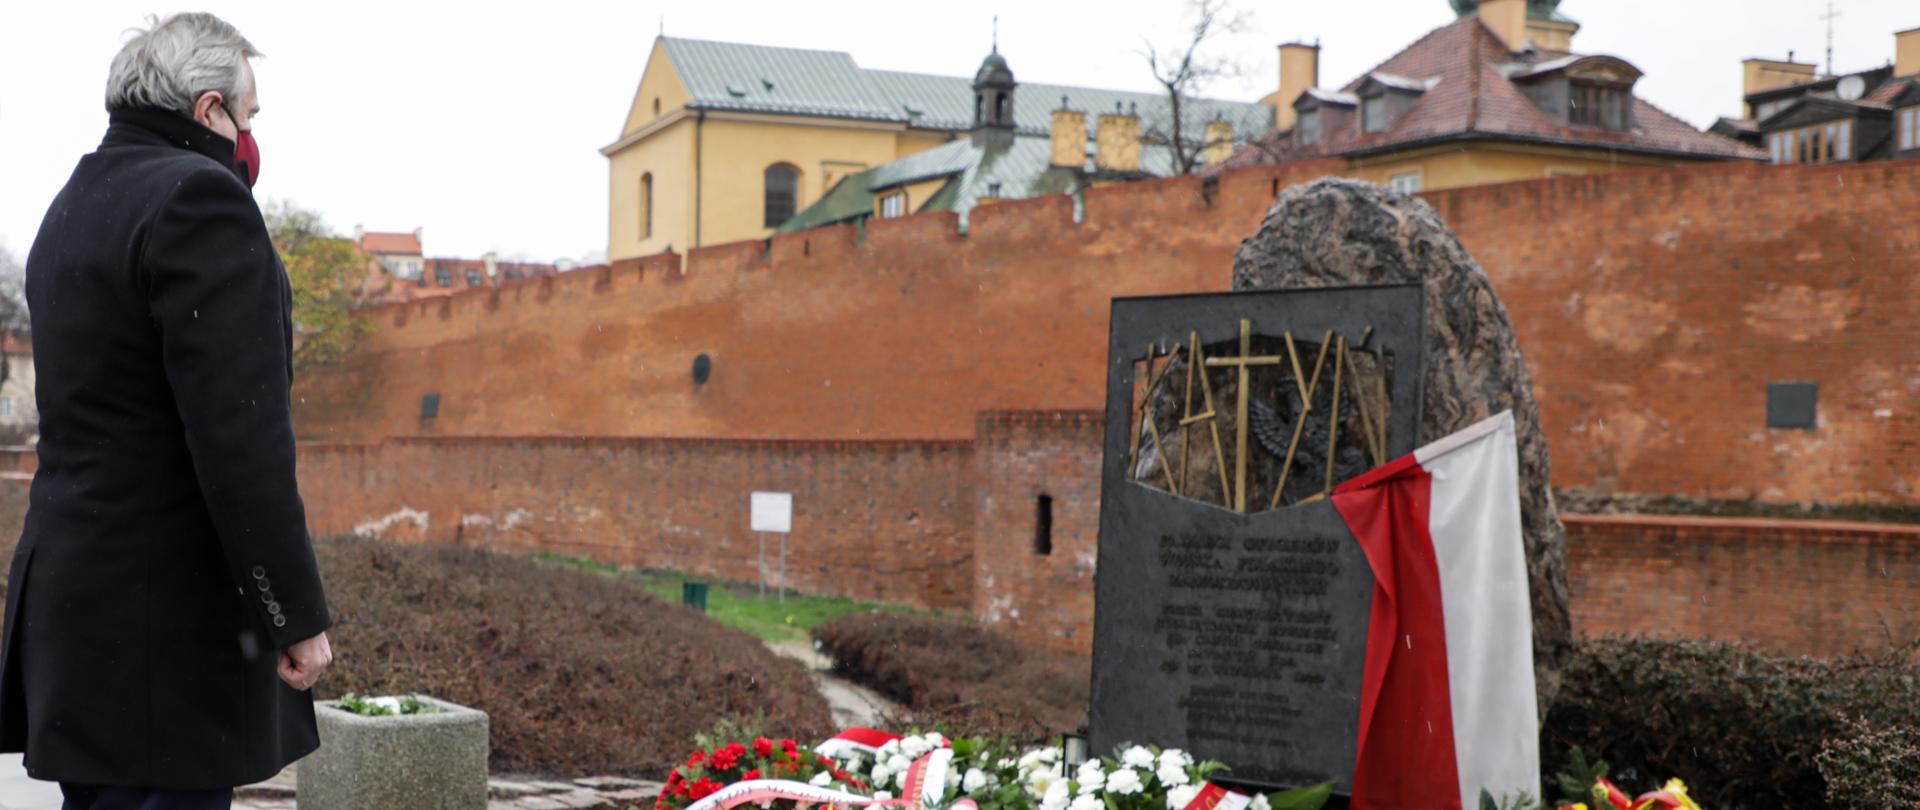 Katyń to symbol walki o prawdę - Dzień Pamięci Ofiar Zbrodni Katyńskiej, fot. Danuta Matloch